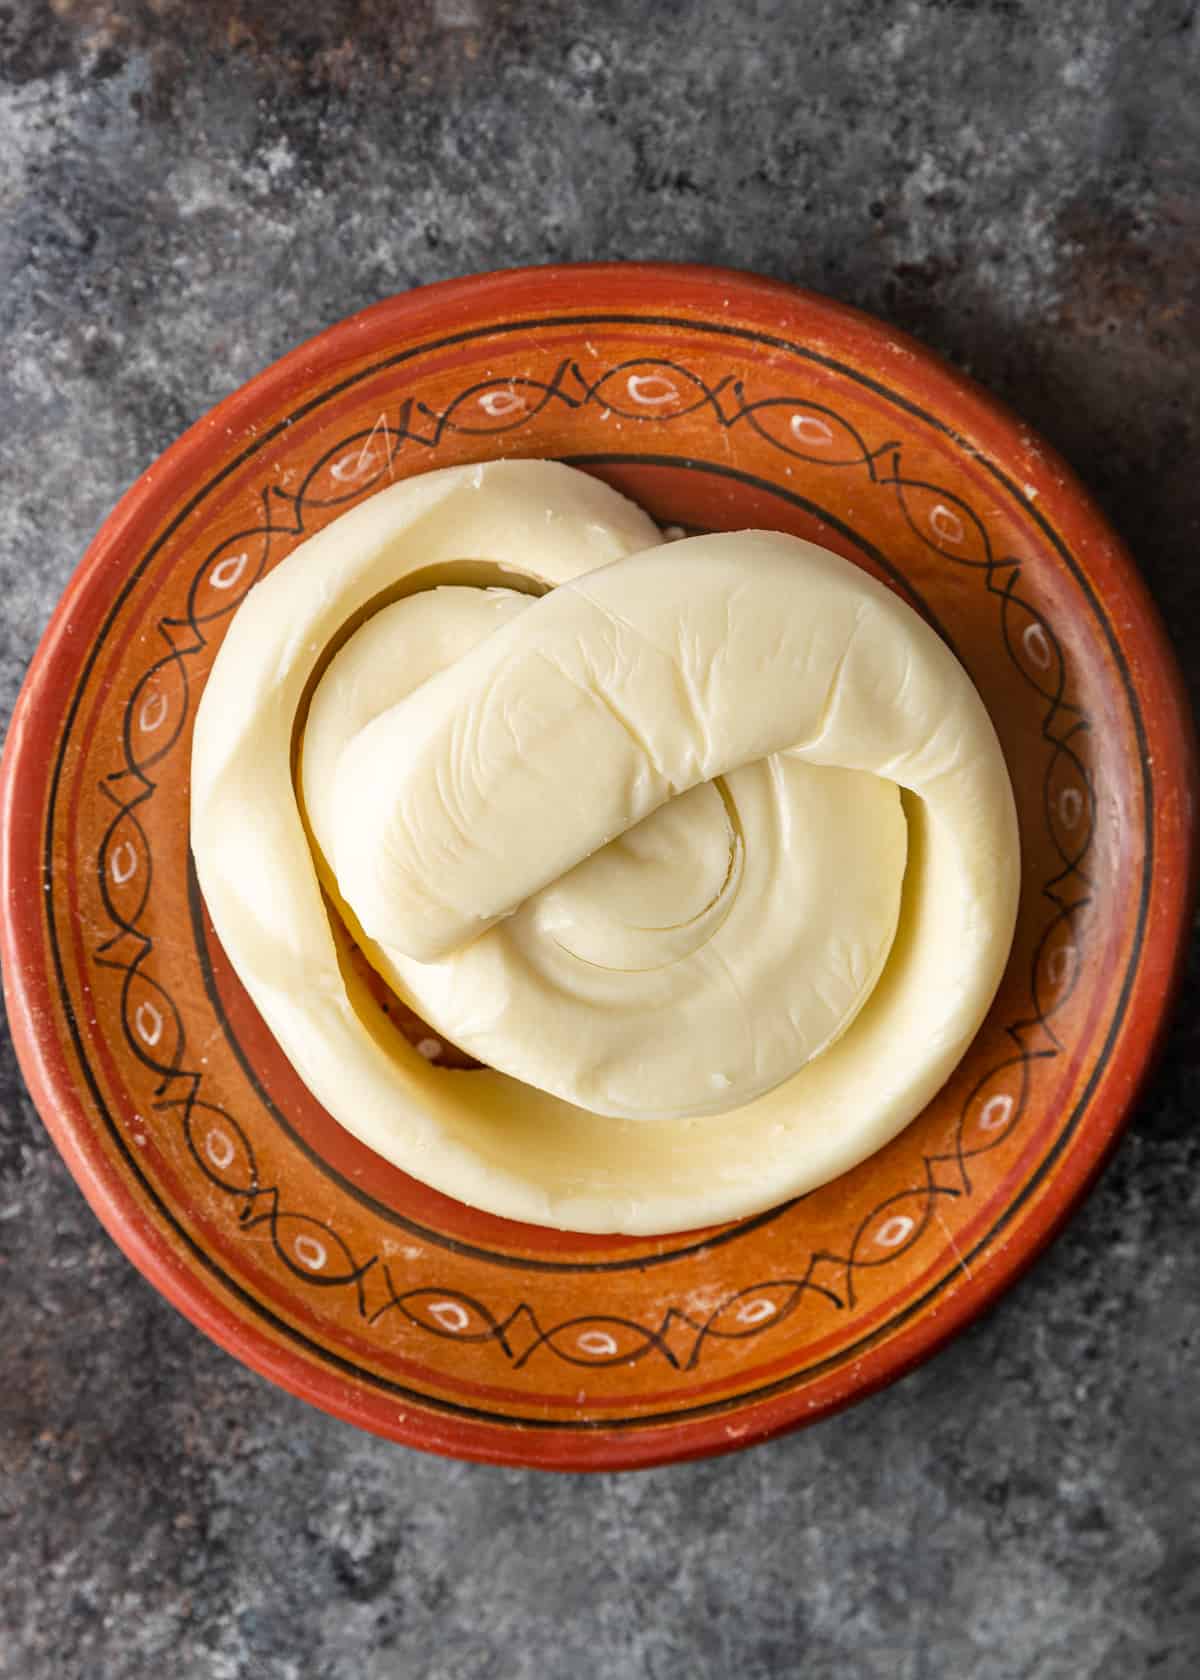 oaxaca cheese swirled on a plate